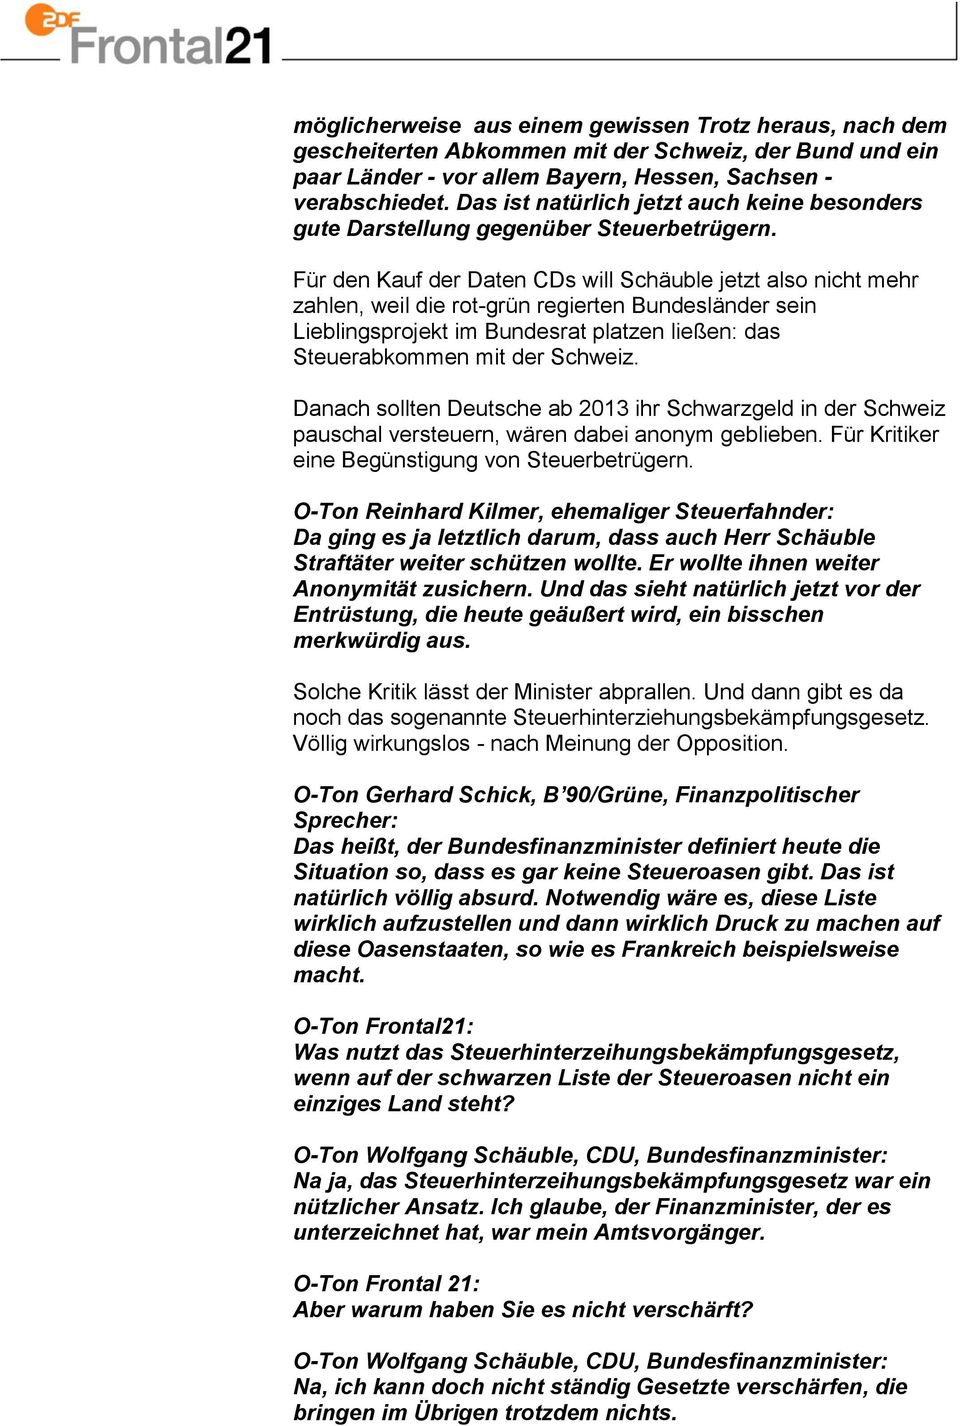 Für den Kauf der Daten CDs will Schäuble jetzt also nicht mehr zahlen, weil die rot-grün regierten Bundesländer sein Lieblingsprojekt im Bundesrat platzen ließen: das Steuerabkommen mit der Schweiz.